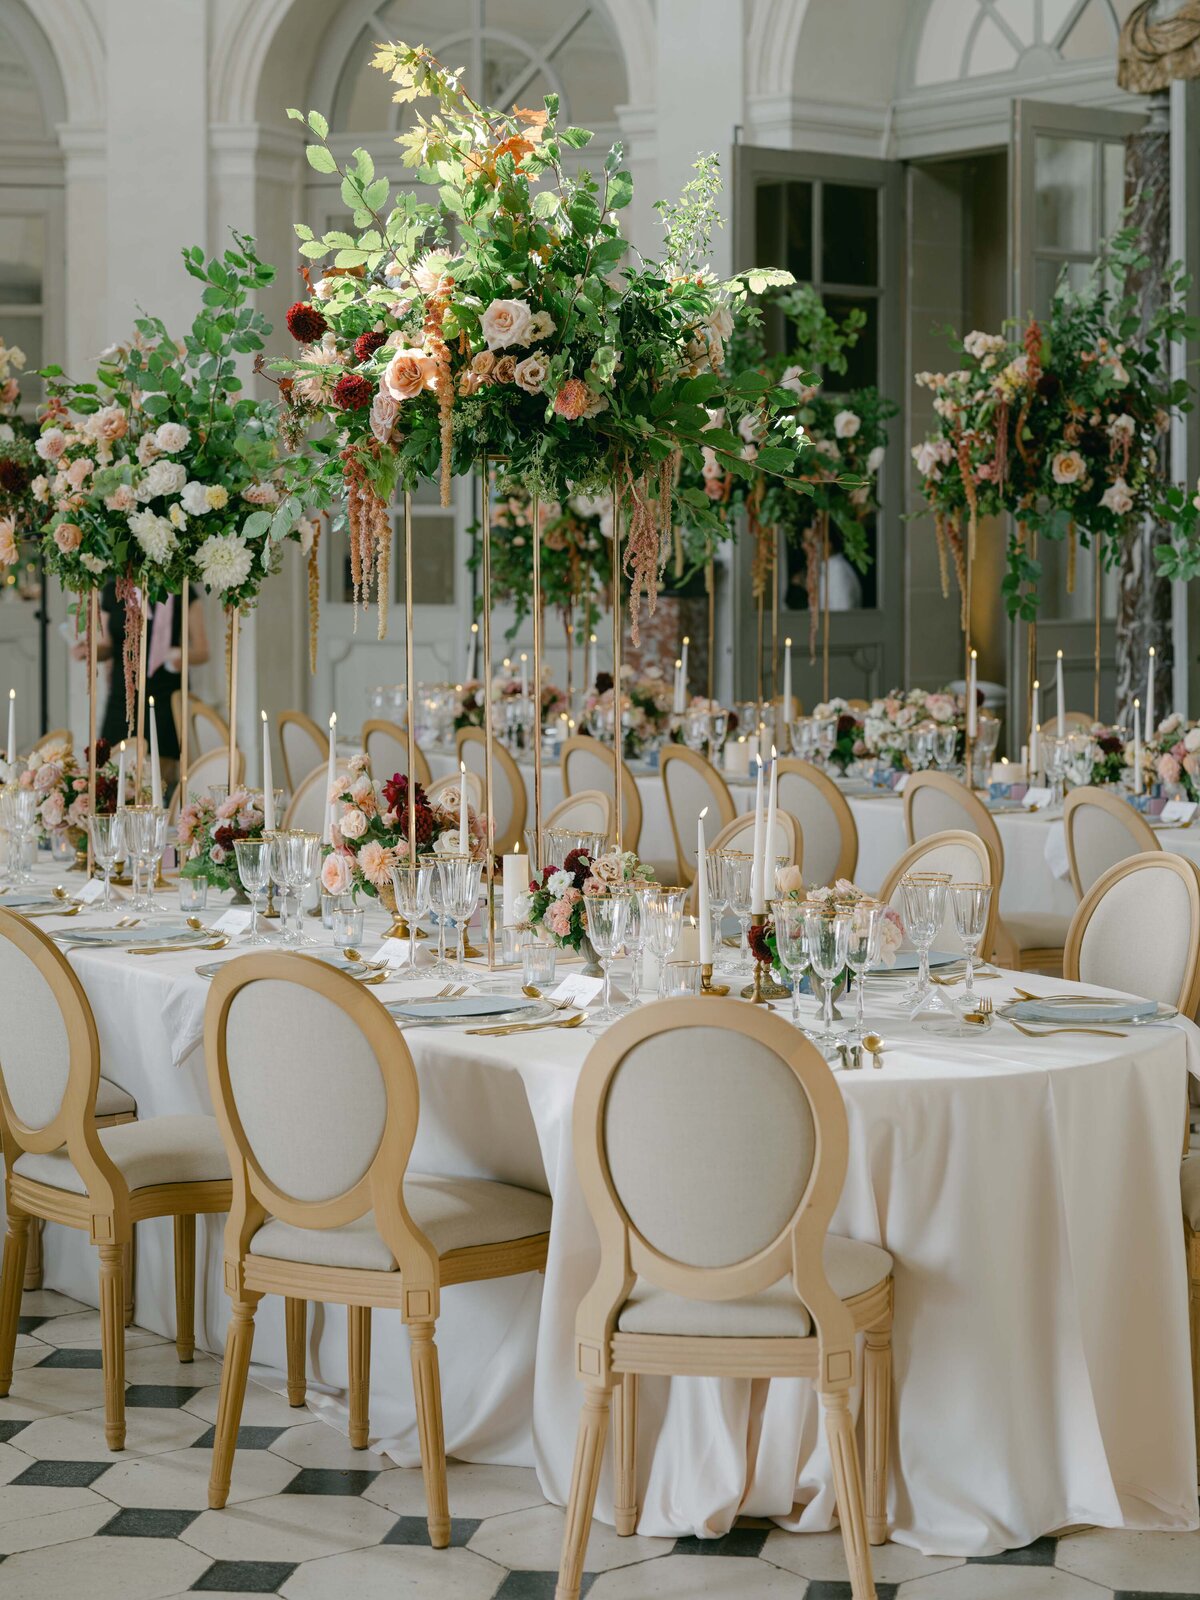 Chateau-Vaux-le-vicomte-wedding-florist-FLORAISON16